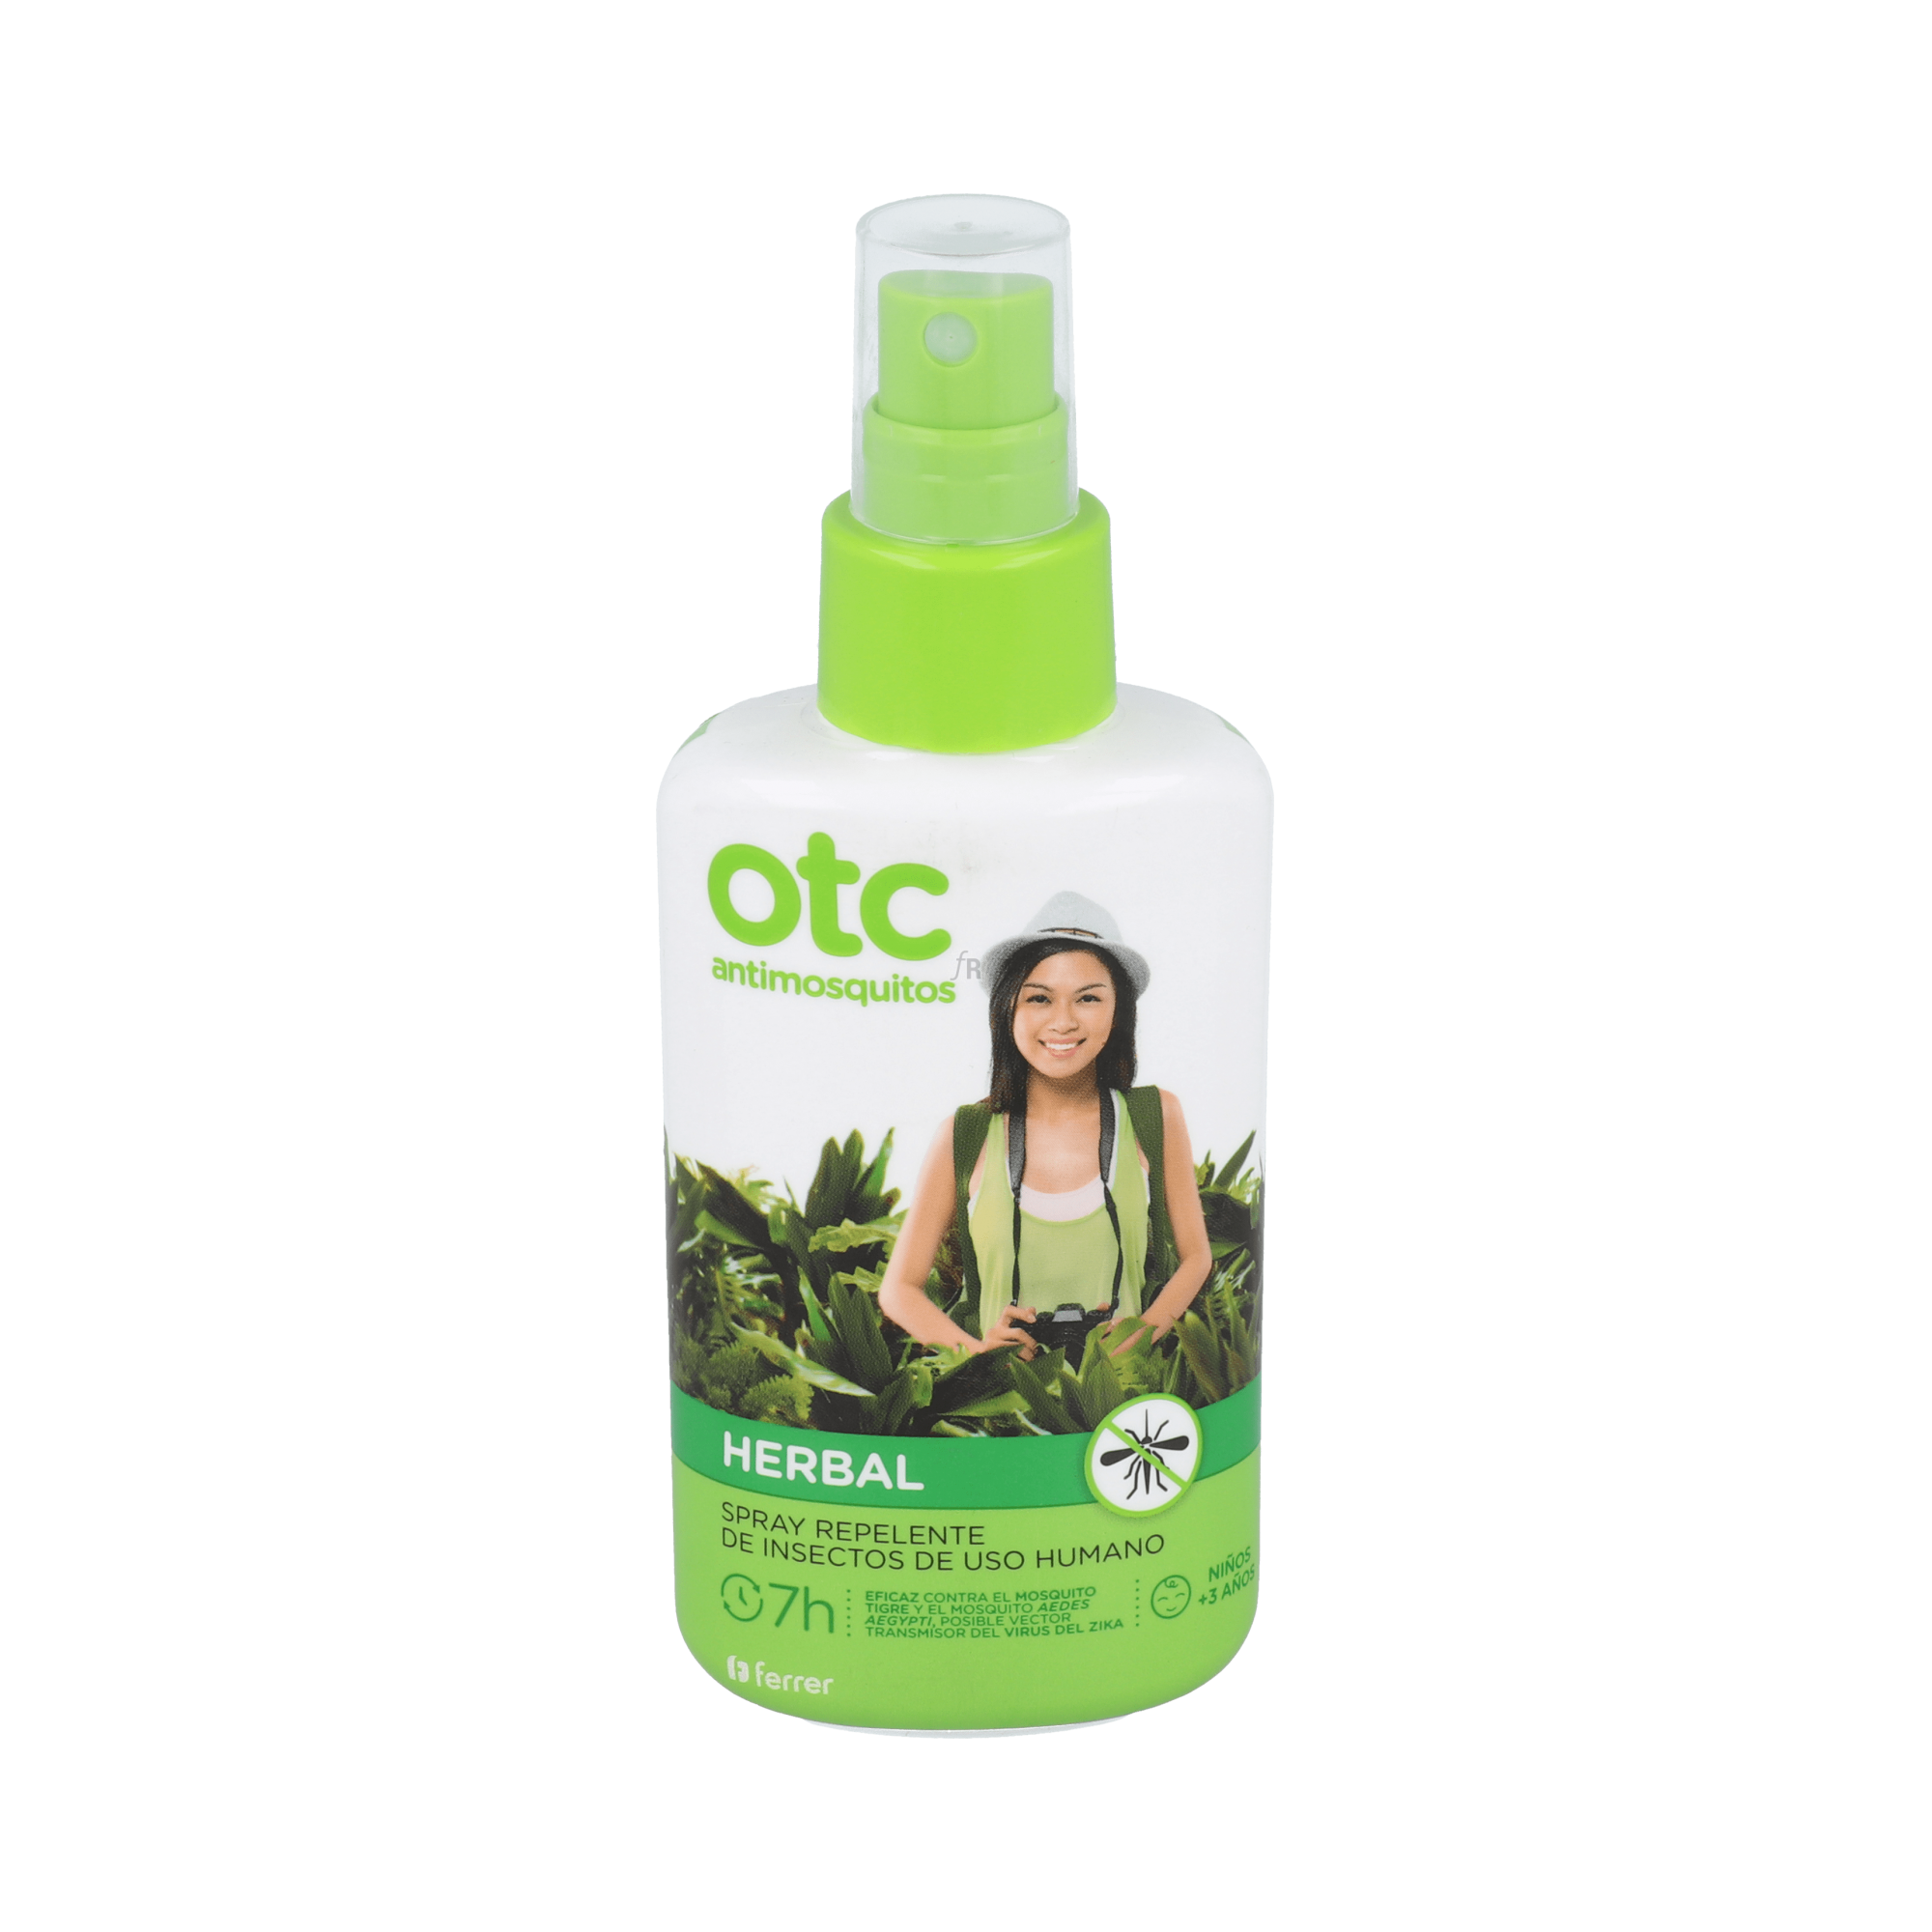 Otc Antimosquitos Herbal Spray 100 Ml